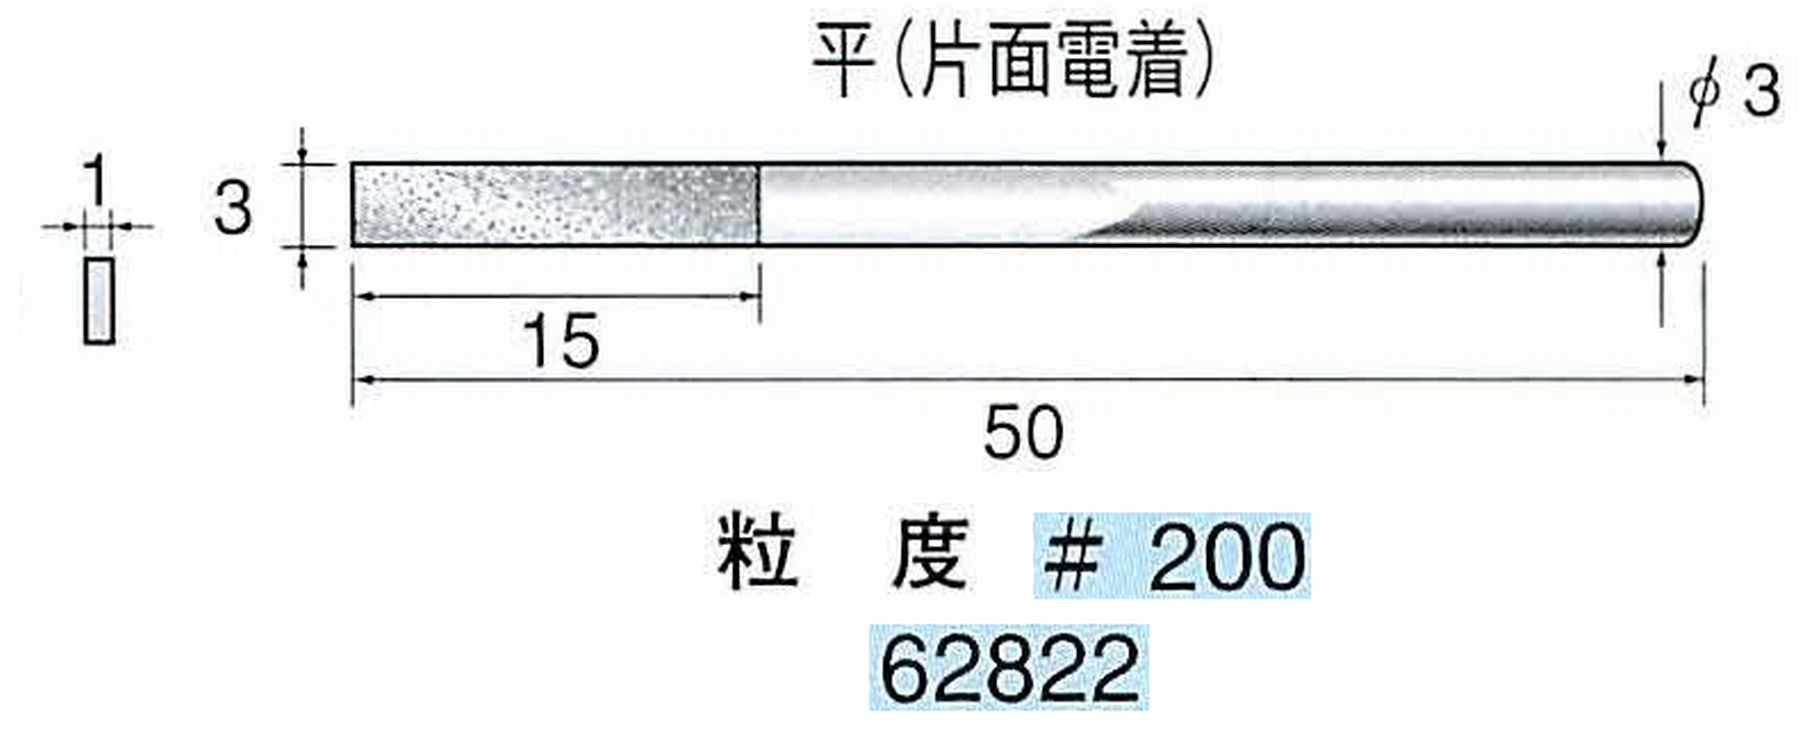 ナカニシ/NAKANISHI 電着ダイヤモンドヤスリショートタイプ 平(片面電着) 62822